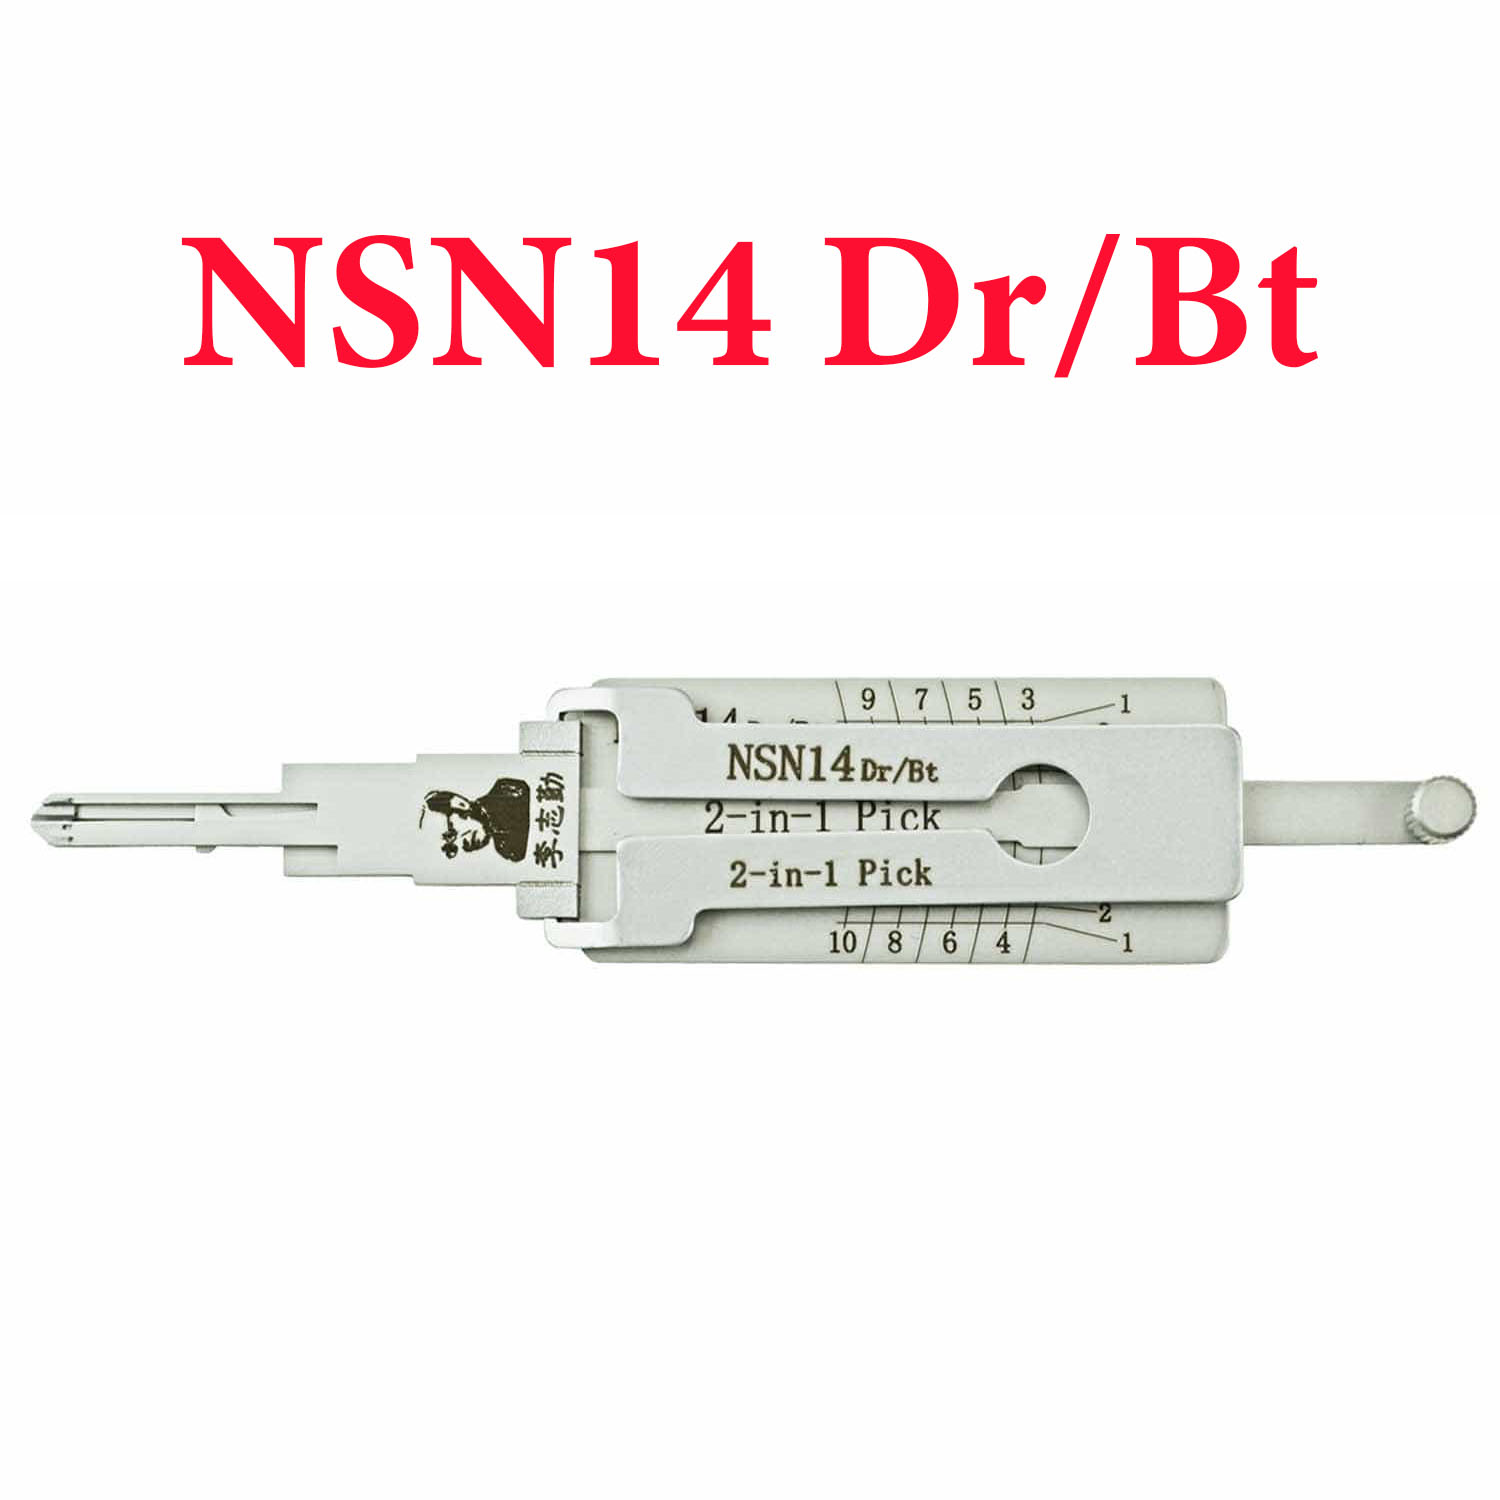 Original Lishi 2-1 Pick/Decoder for Nissan NSN14 DR/TK